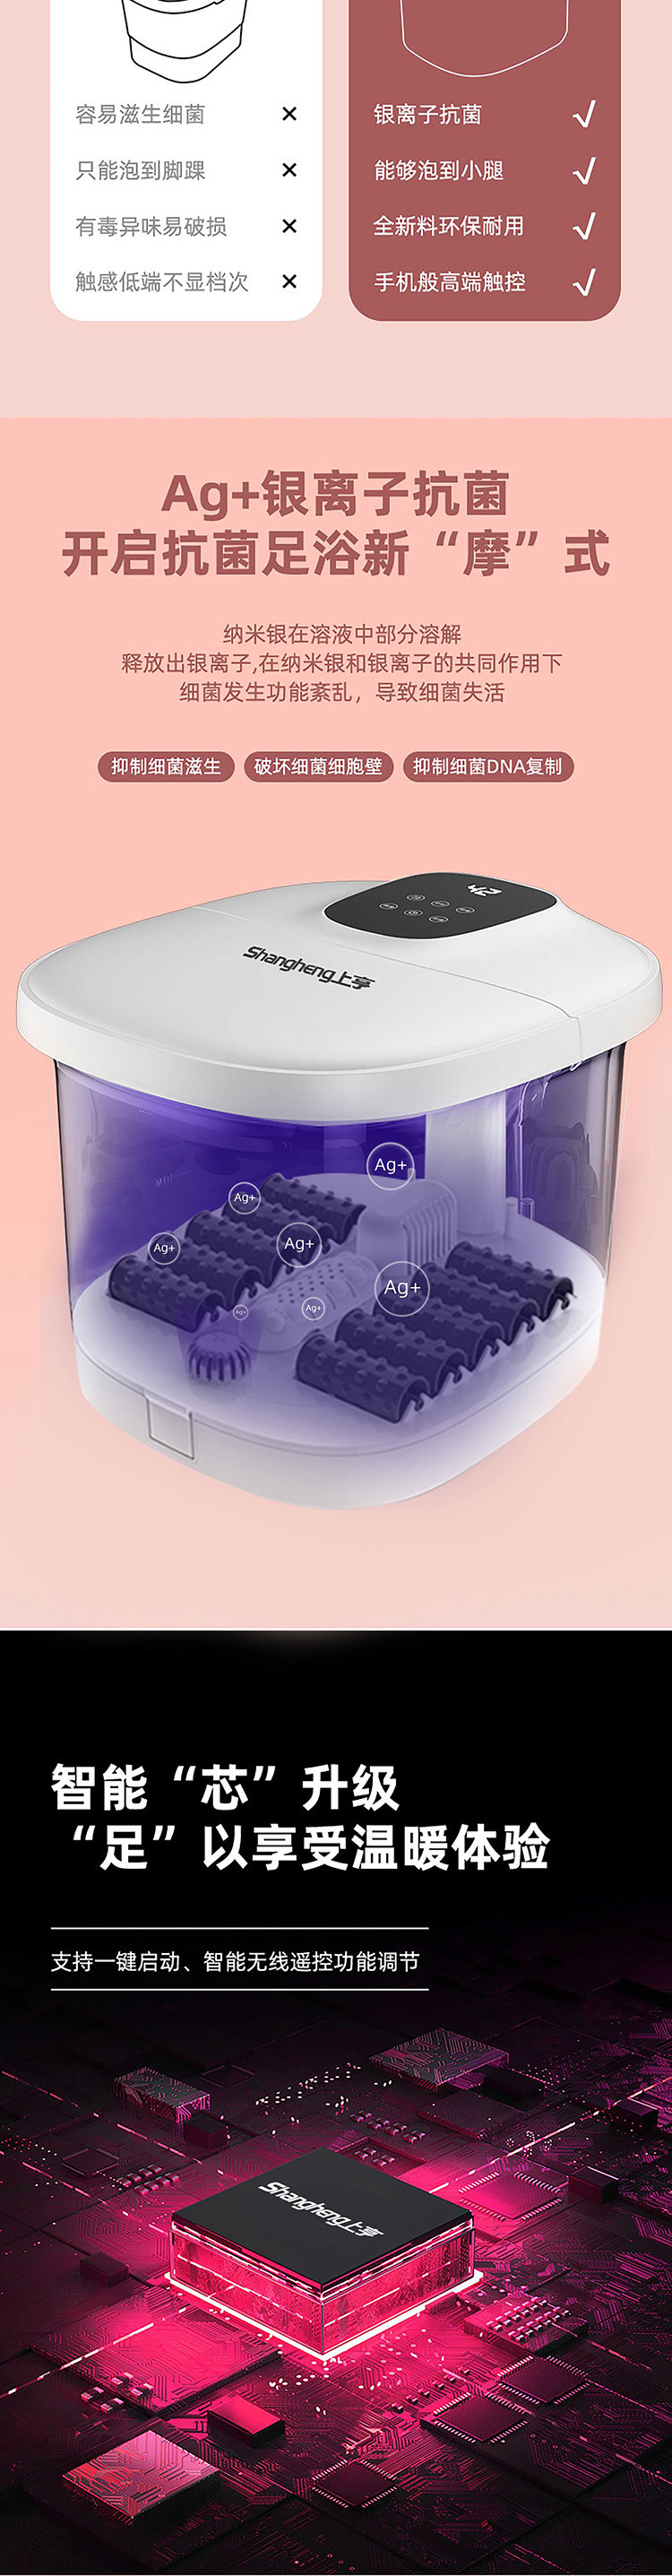 上亨 足浴盆电动按摩加热养生洗脚盆多功能家用全自动高深泡脚桶SHZH-JKZ036-1